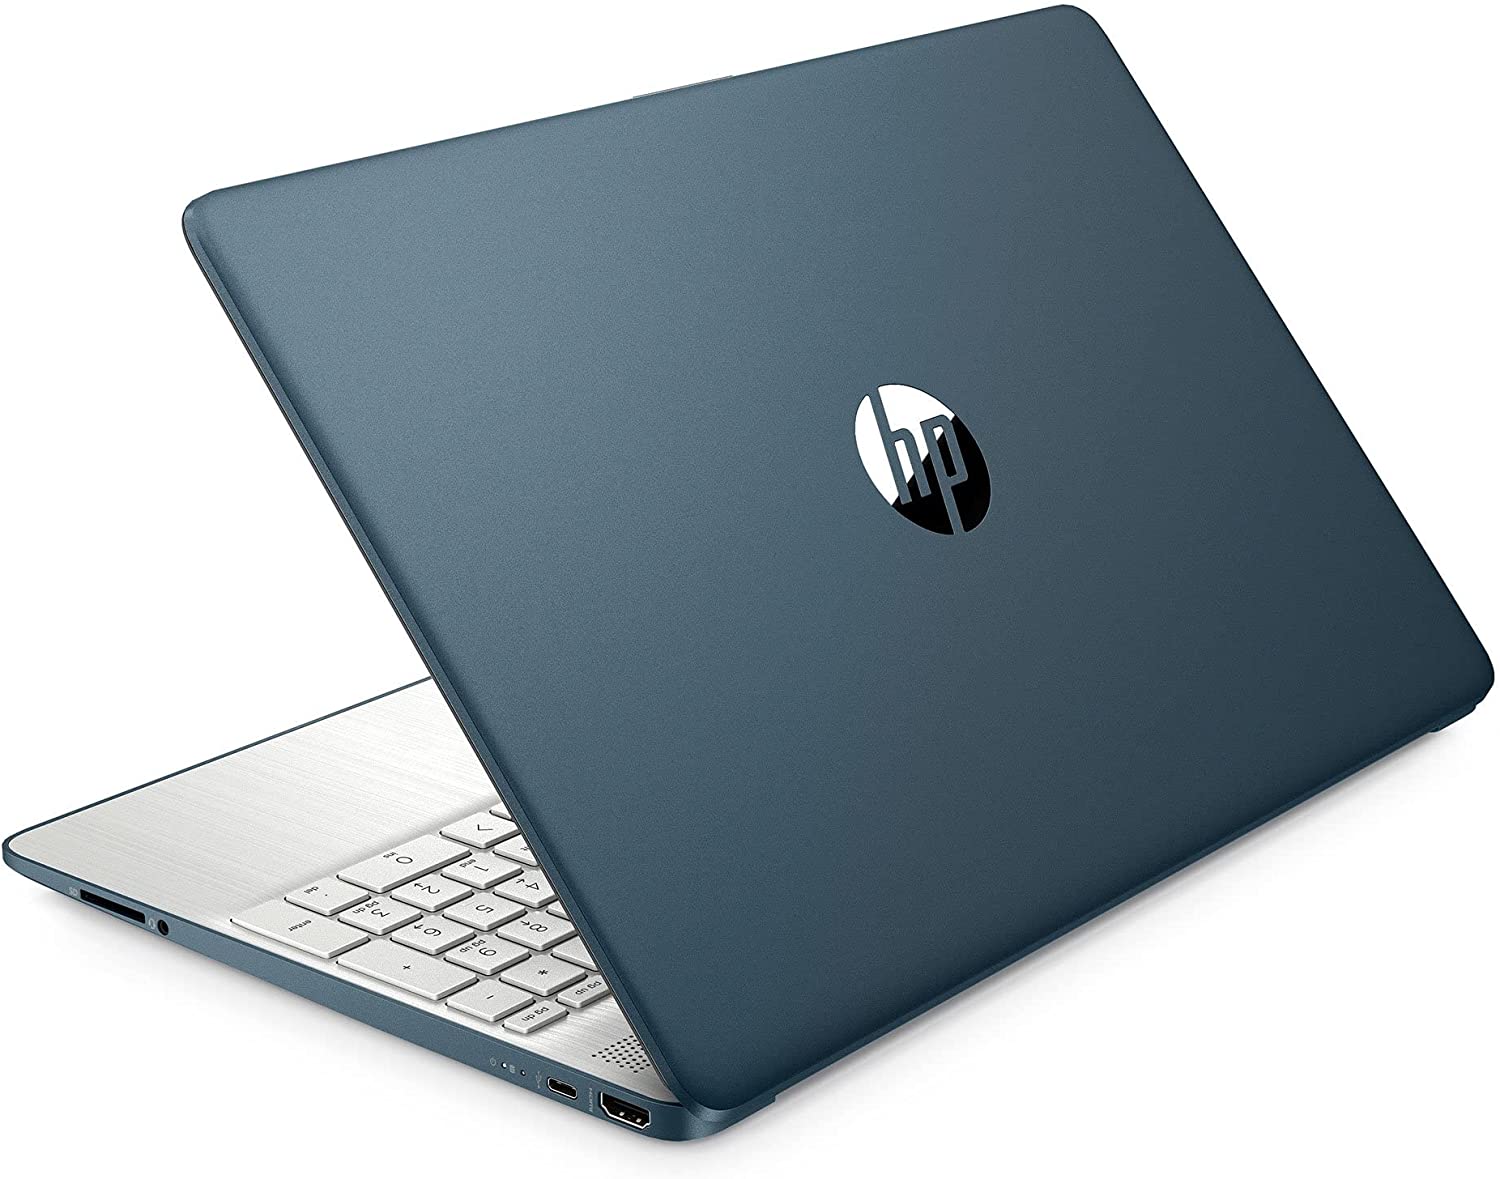 2022 HP 15 Laptop - 15.6" FHD Display, Massive 16GB RAM 512GB SSD 5